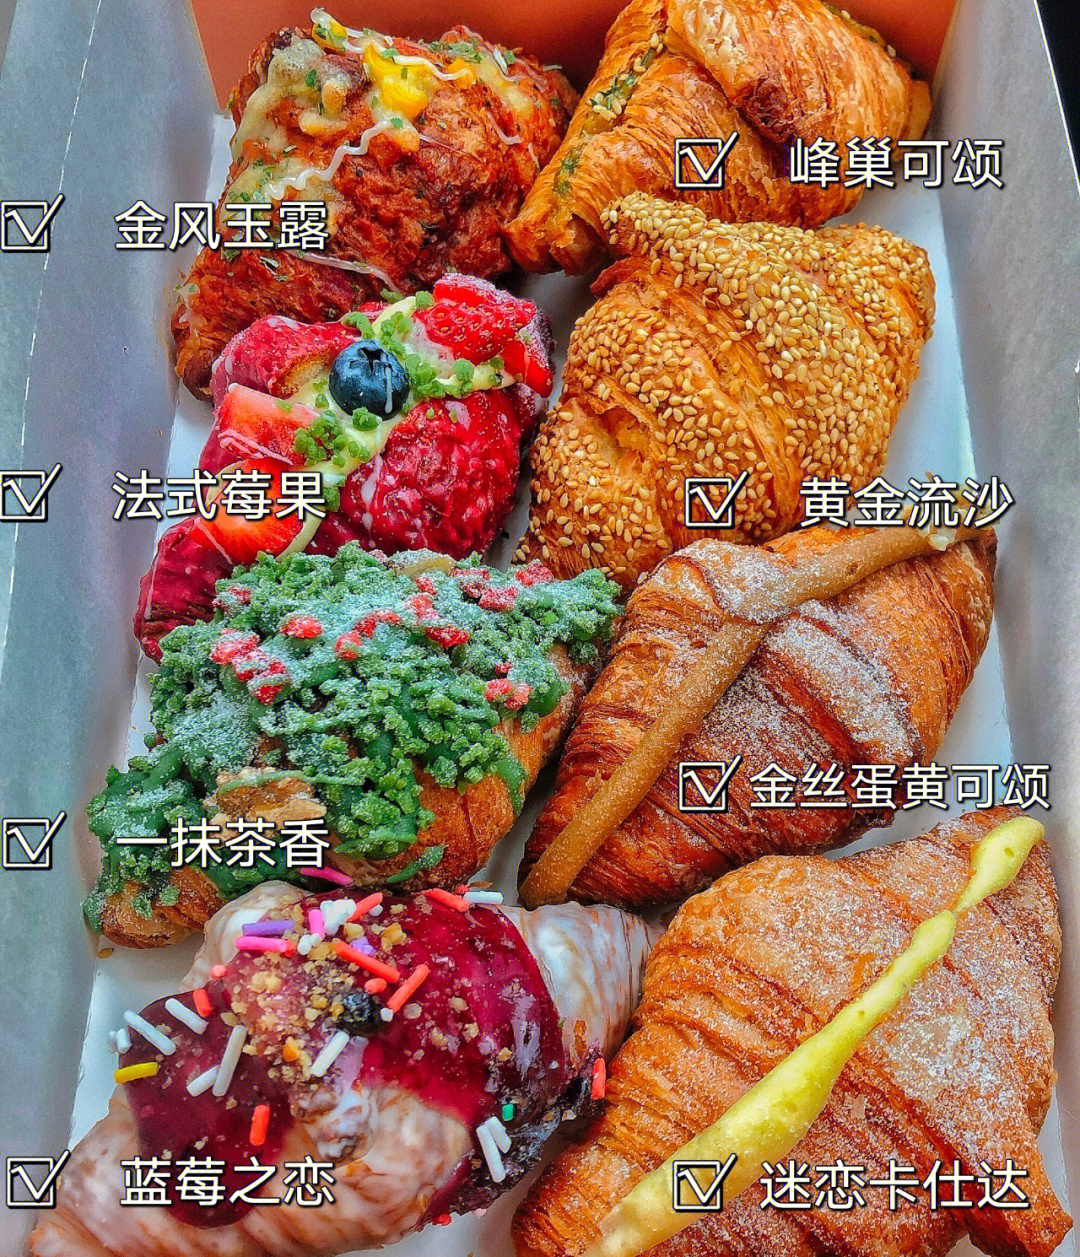 月枫堂菜单图片